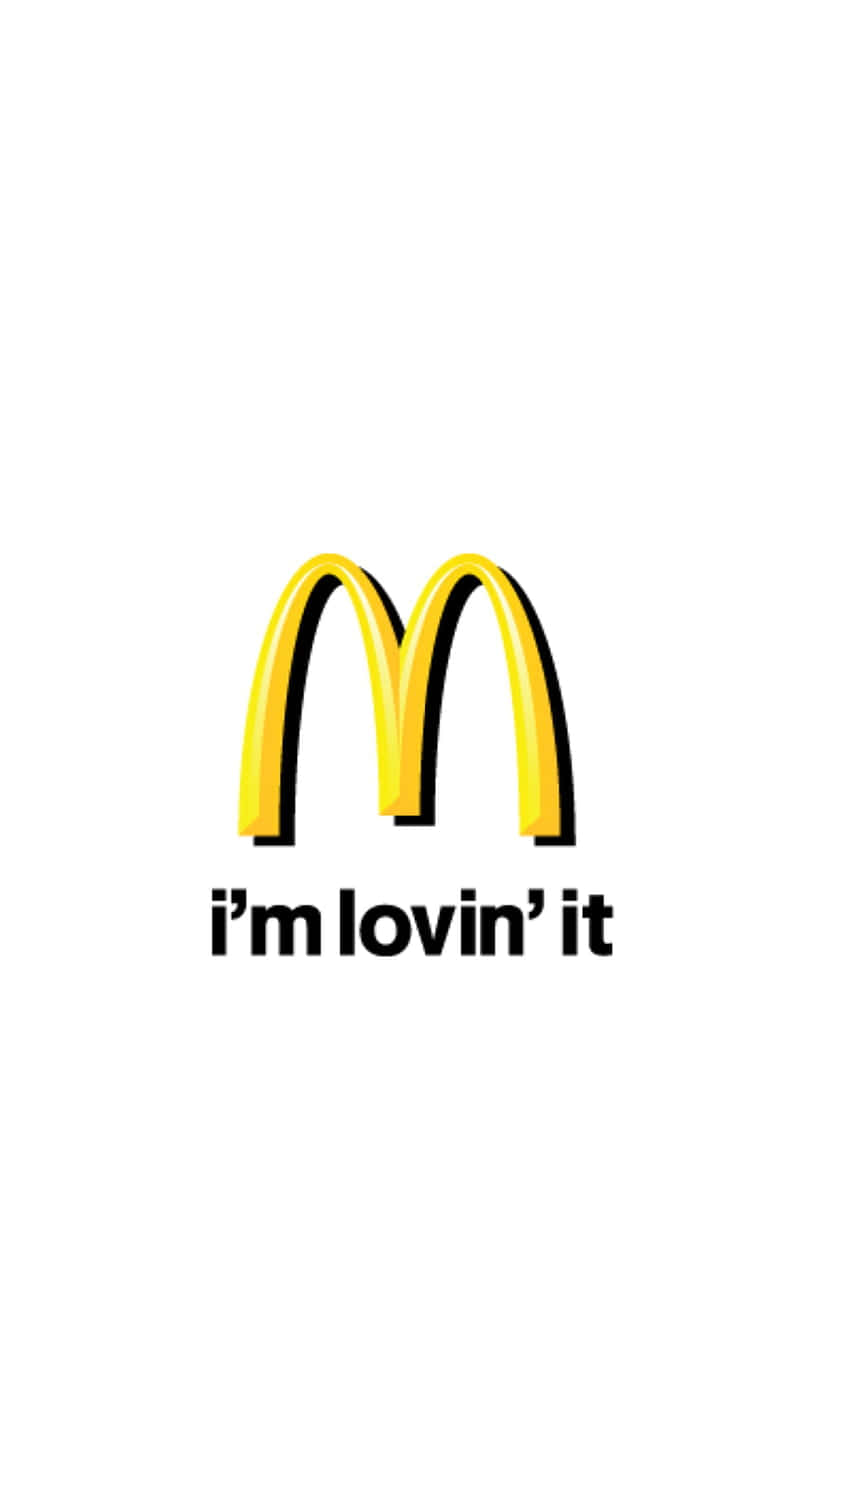 McDonalds logo med ordene 